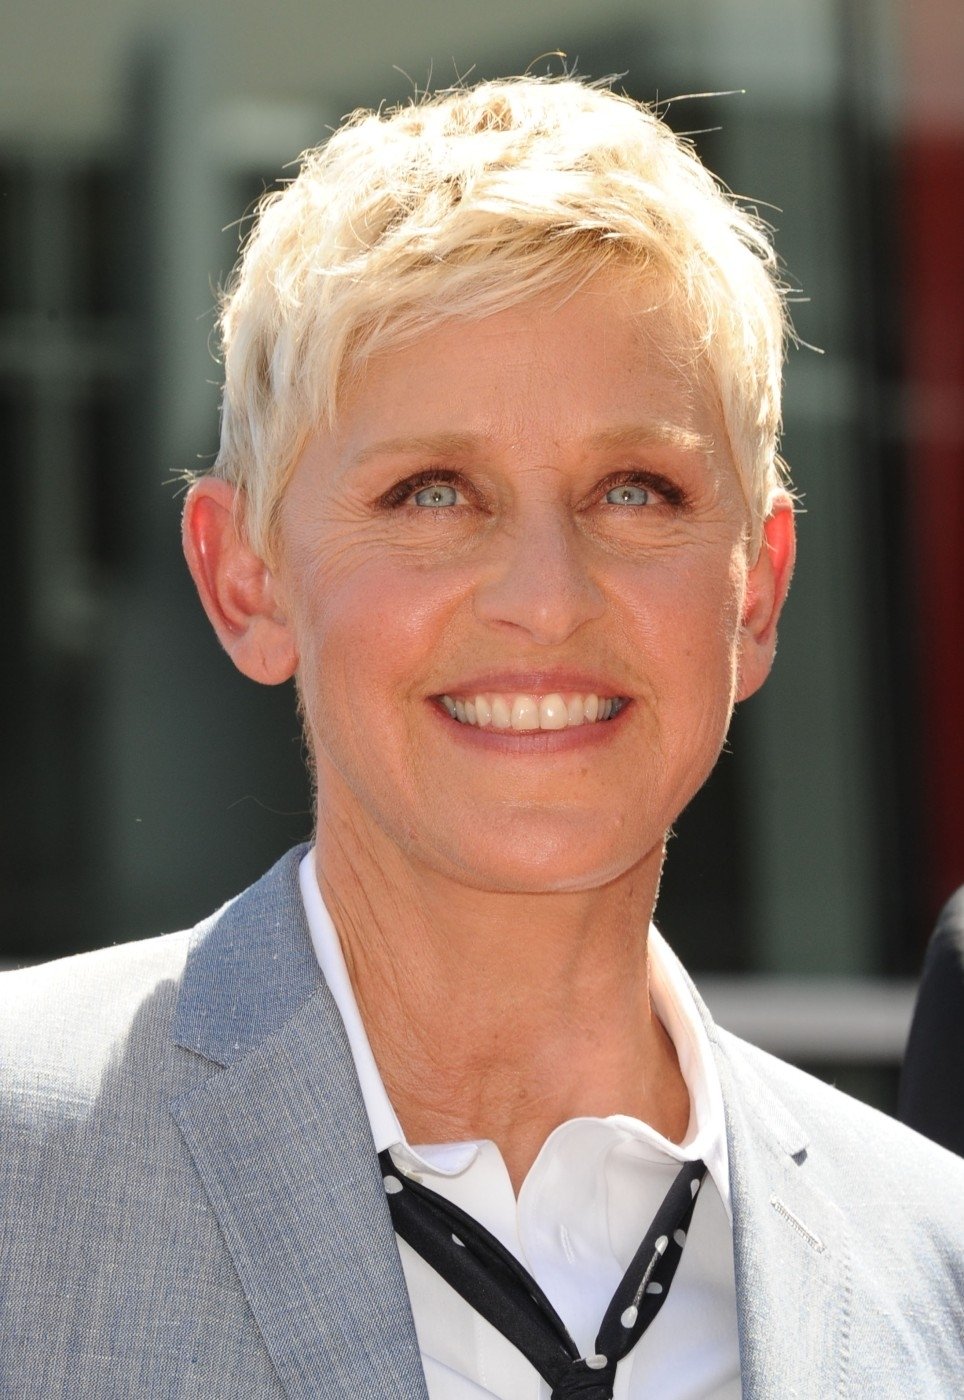 Slavná americká komička a moderátorka Ellen DeGeneres je ikonou lesbické komunity. V USA běží již 10. sezóna jejího talk show pořadu The Ellen, do kterého si zve známé osobnosti. Čtyřiapadesátiletá moderátorka, která je vdaná za herečku Portiu De Rossi (známá ze seriálu Ally McBealová) mimo jiné moderovala  v roce 2007 udílení Oscarů. Bylo to tak vůbec poprvé, co se této cti dostalo někomu z LGBT komunity.